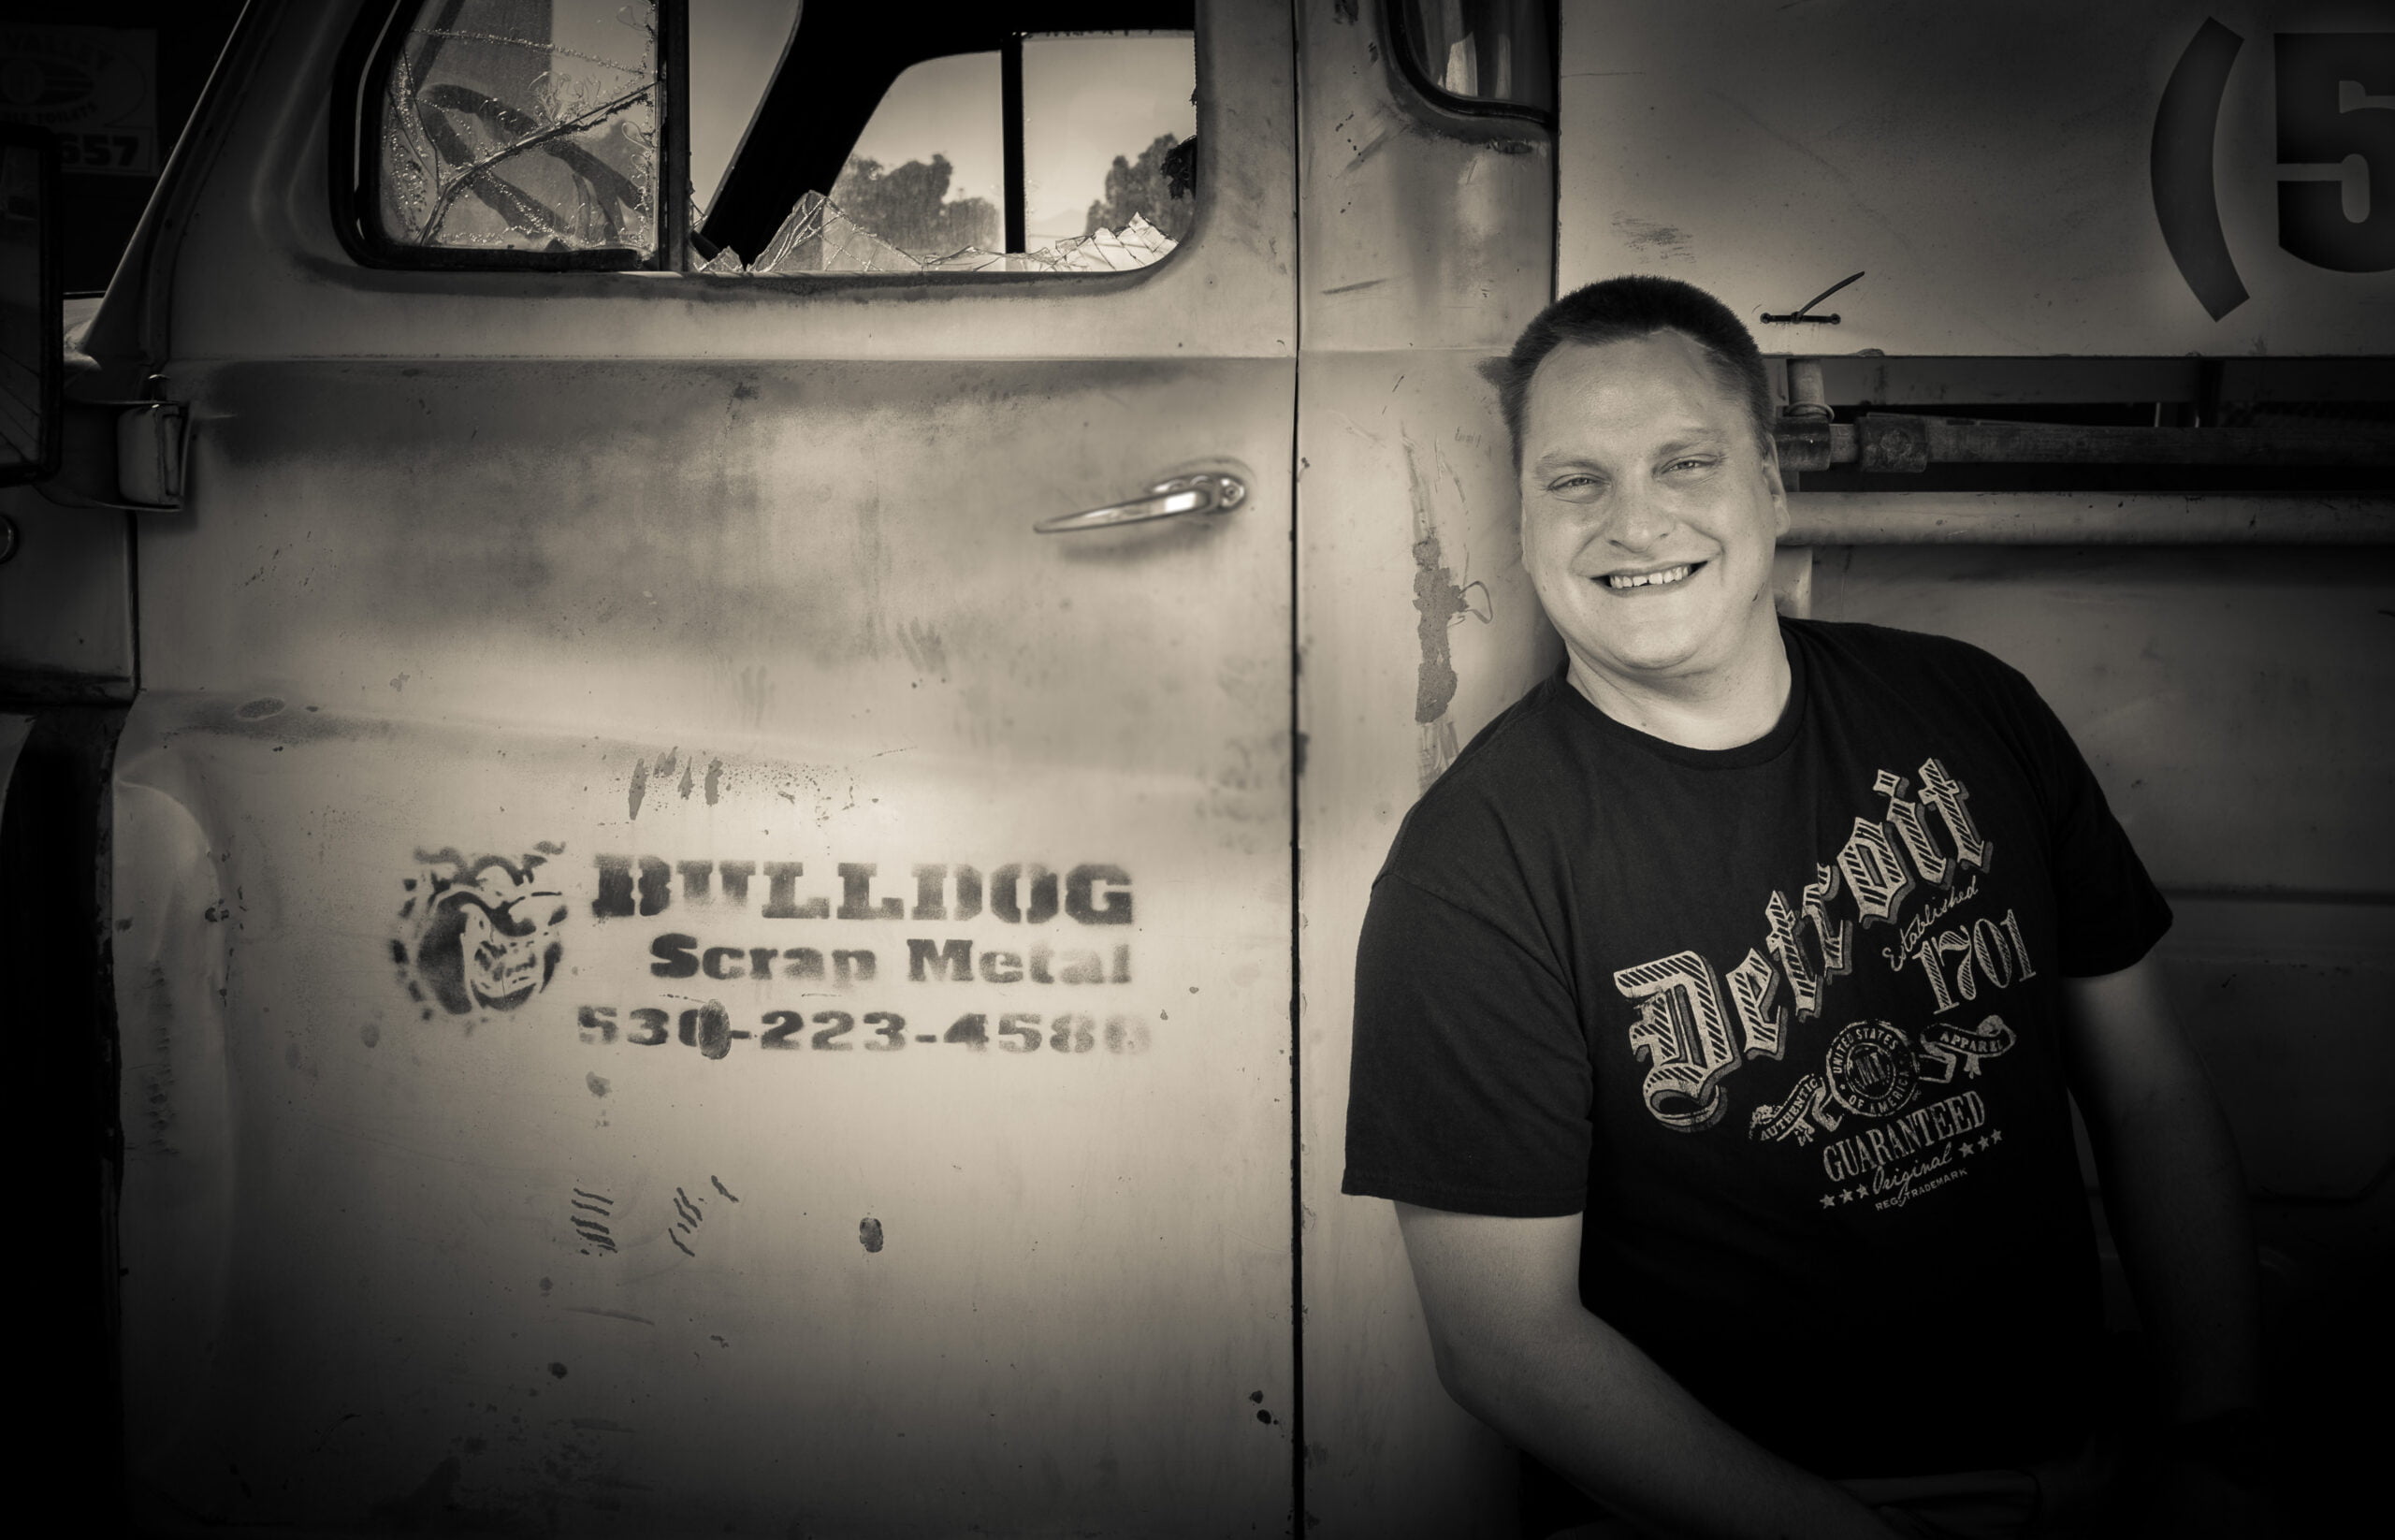 Matthew Sprenger in front of Bulldog Scrap Metal truck.